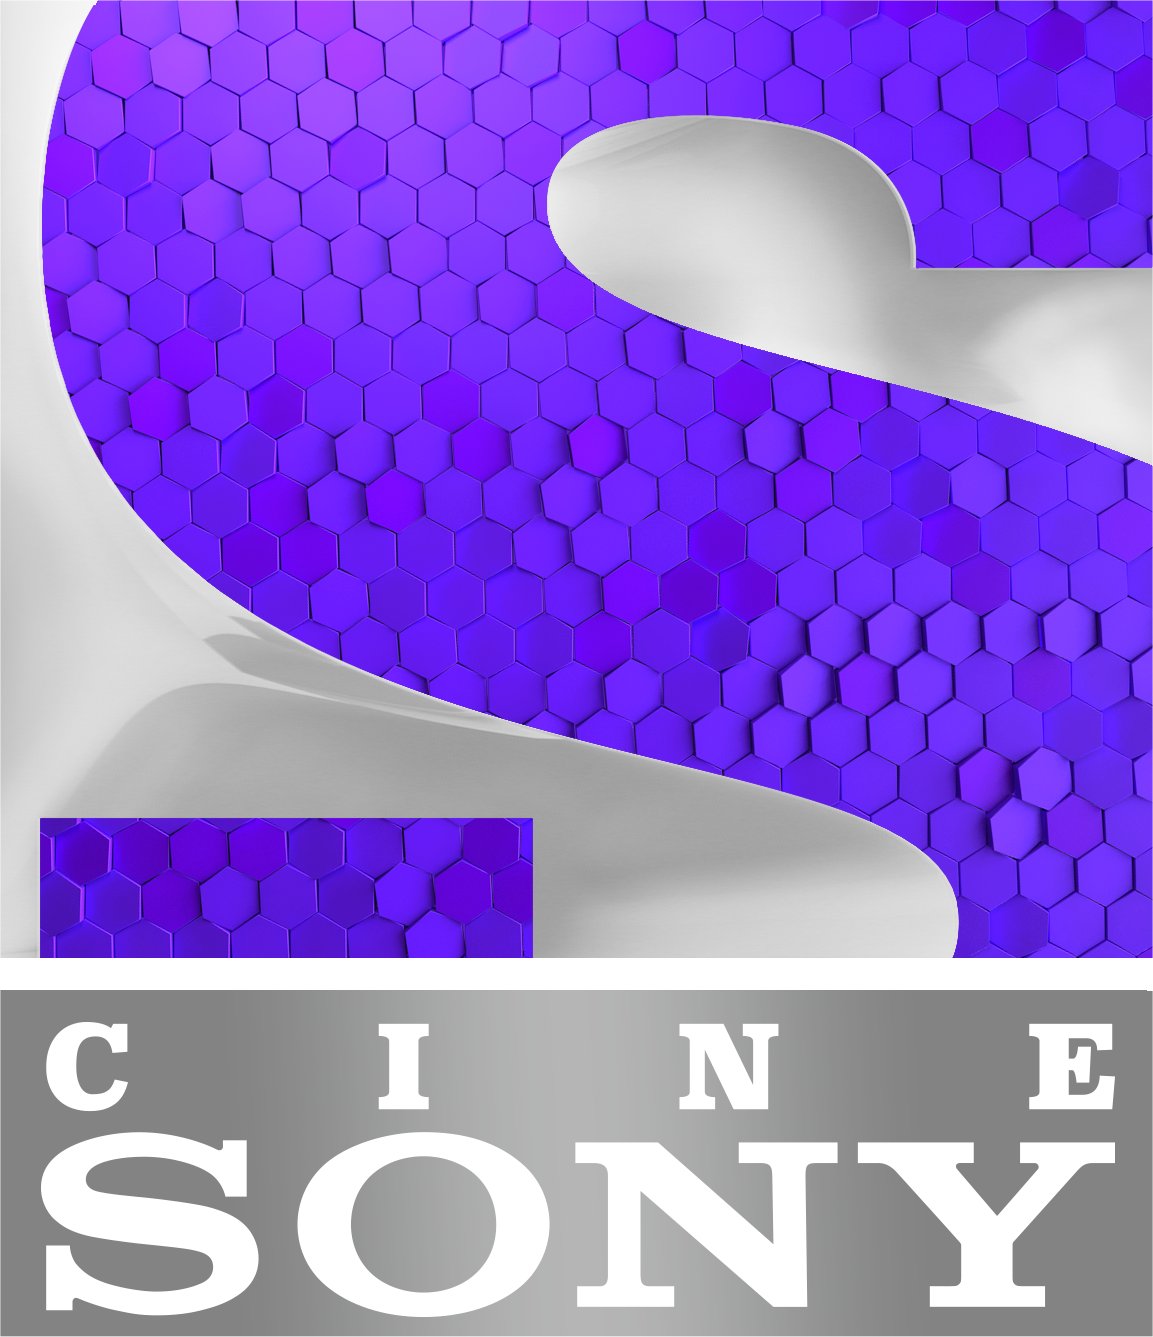 Novità! Da oggi sul canale 55 digitale terrestre arriva in chiaro Cine Sony